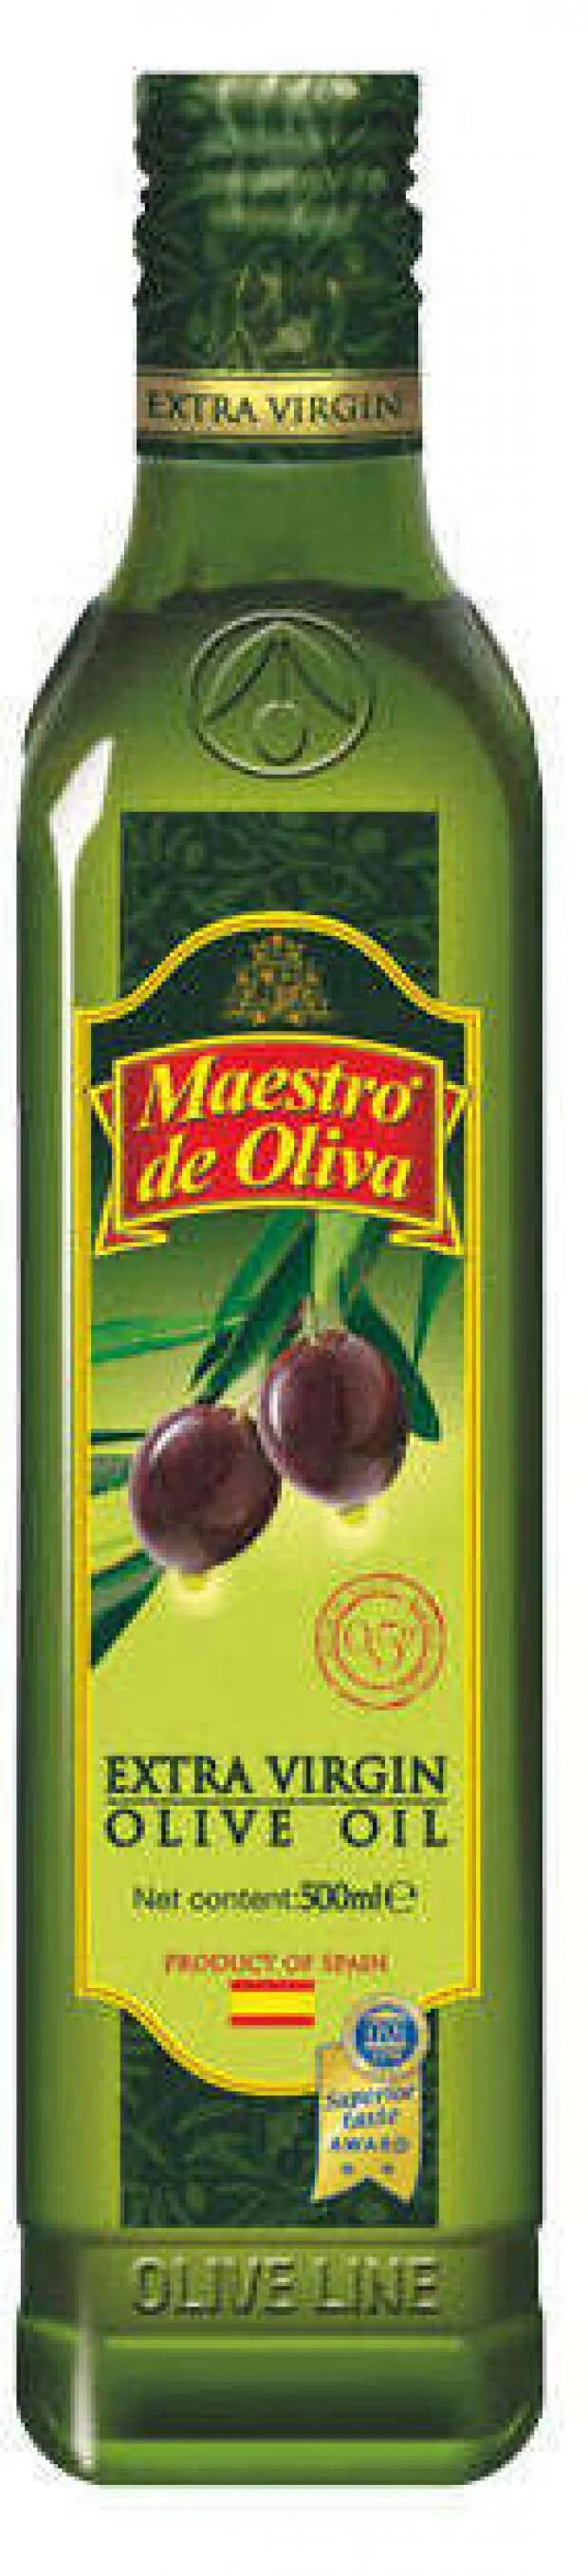 Maestro de oliva оливковое масло. Масло Maestro de Oliva 250мл оливковое. Масло оливковое Maestro de Oliva Extra Virgin 500мл. Maestro de Oliva 500 мл Olive Oil.